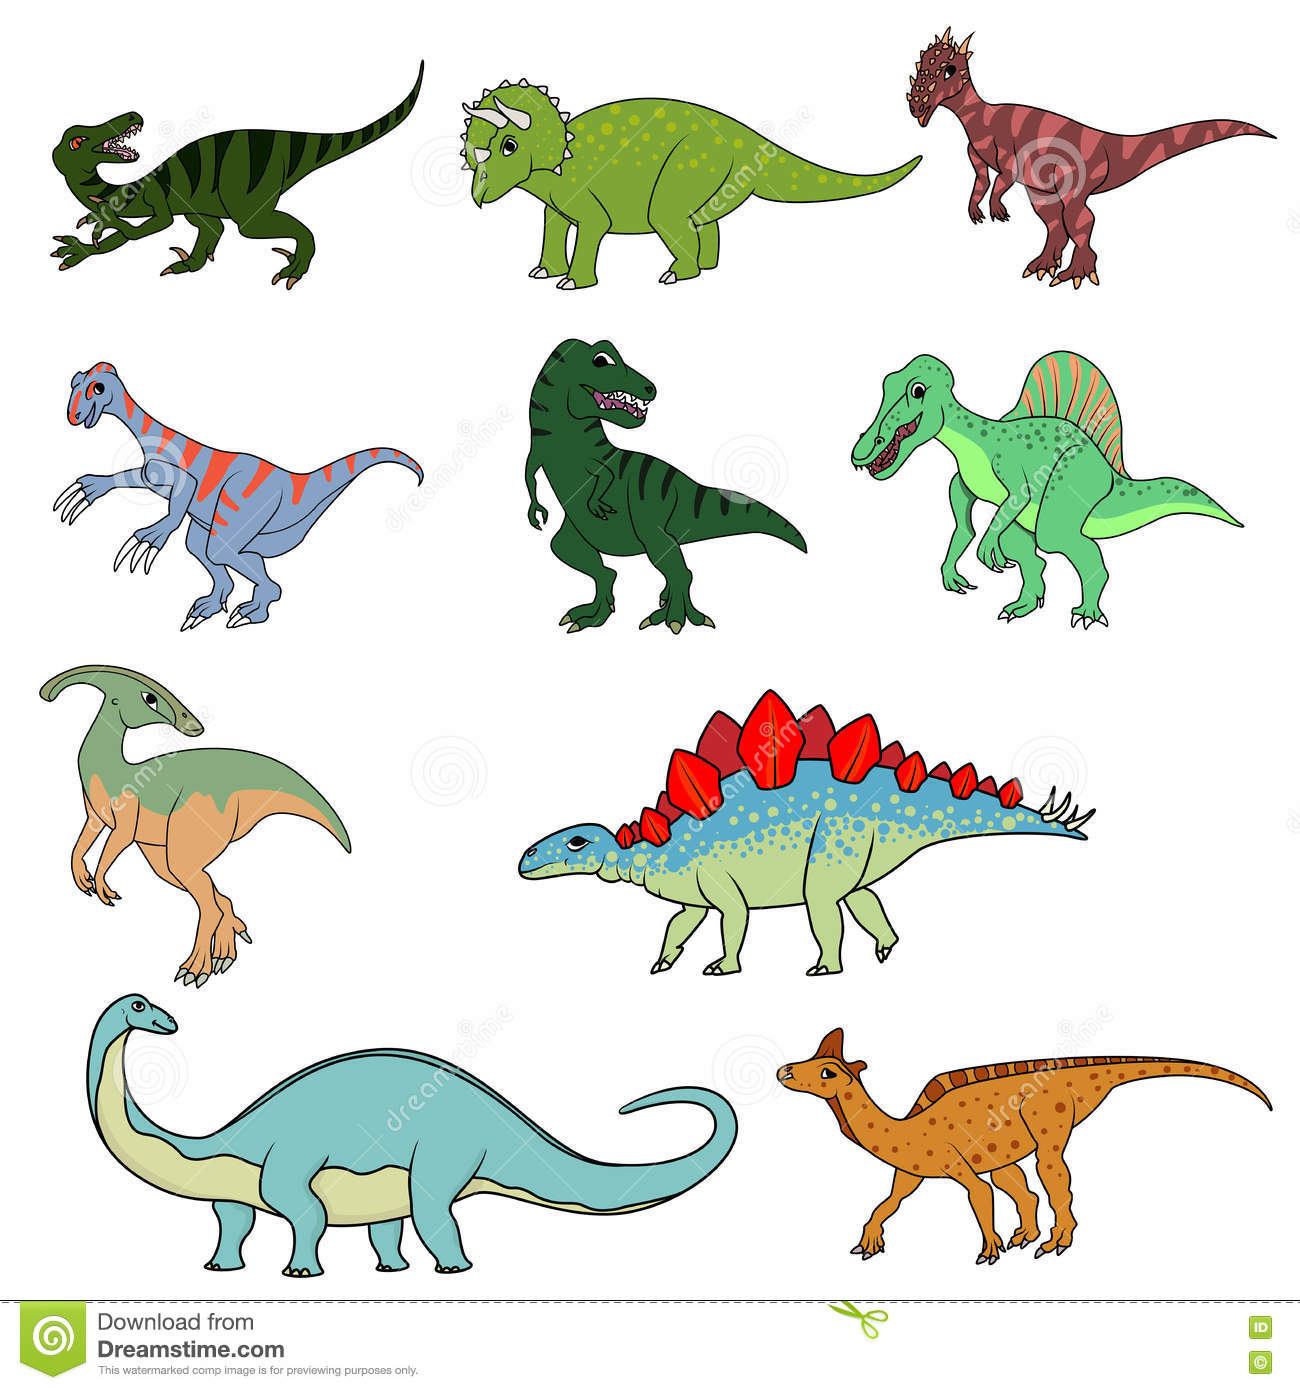 Les différents dinosaures